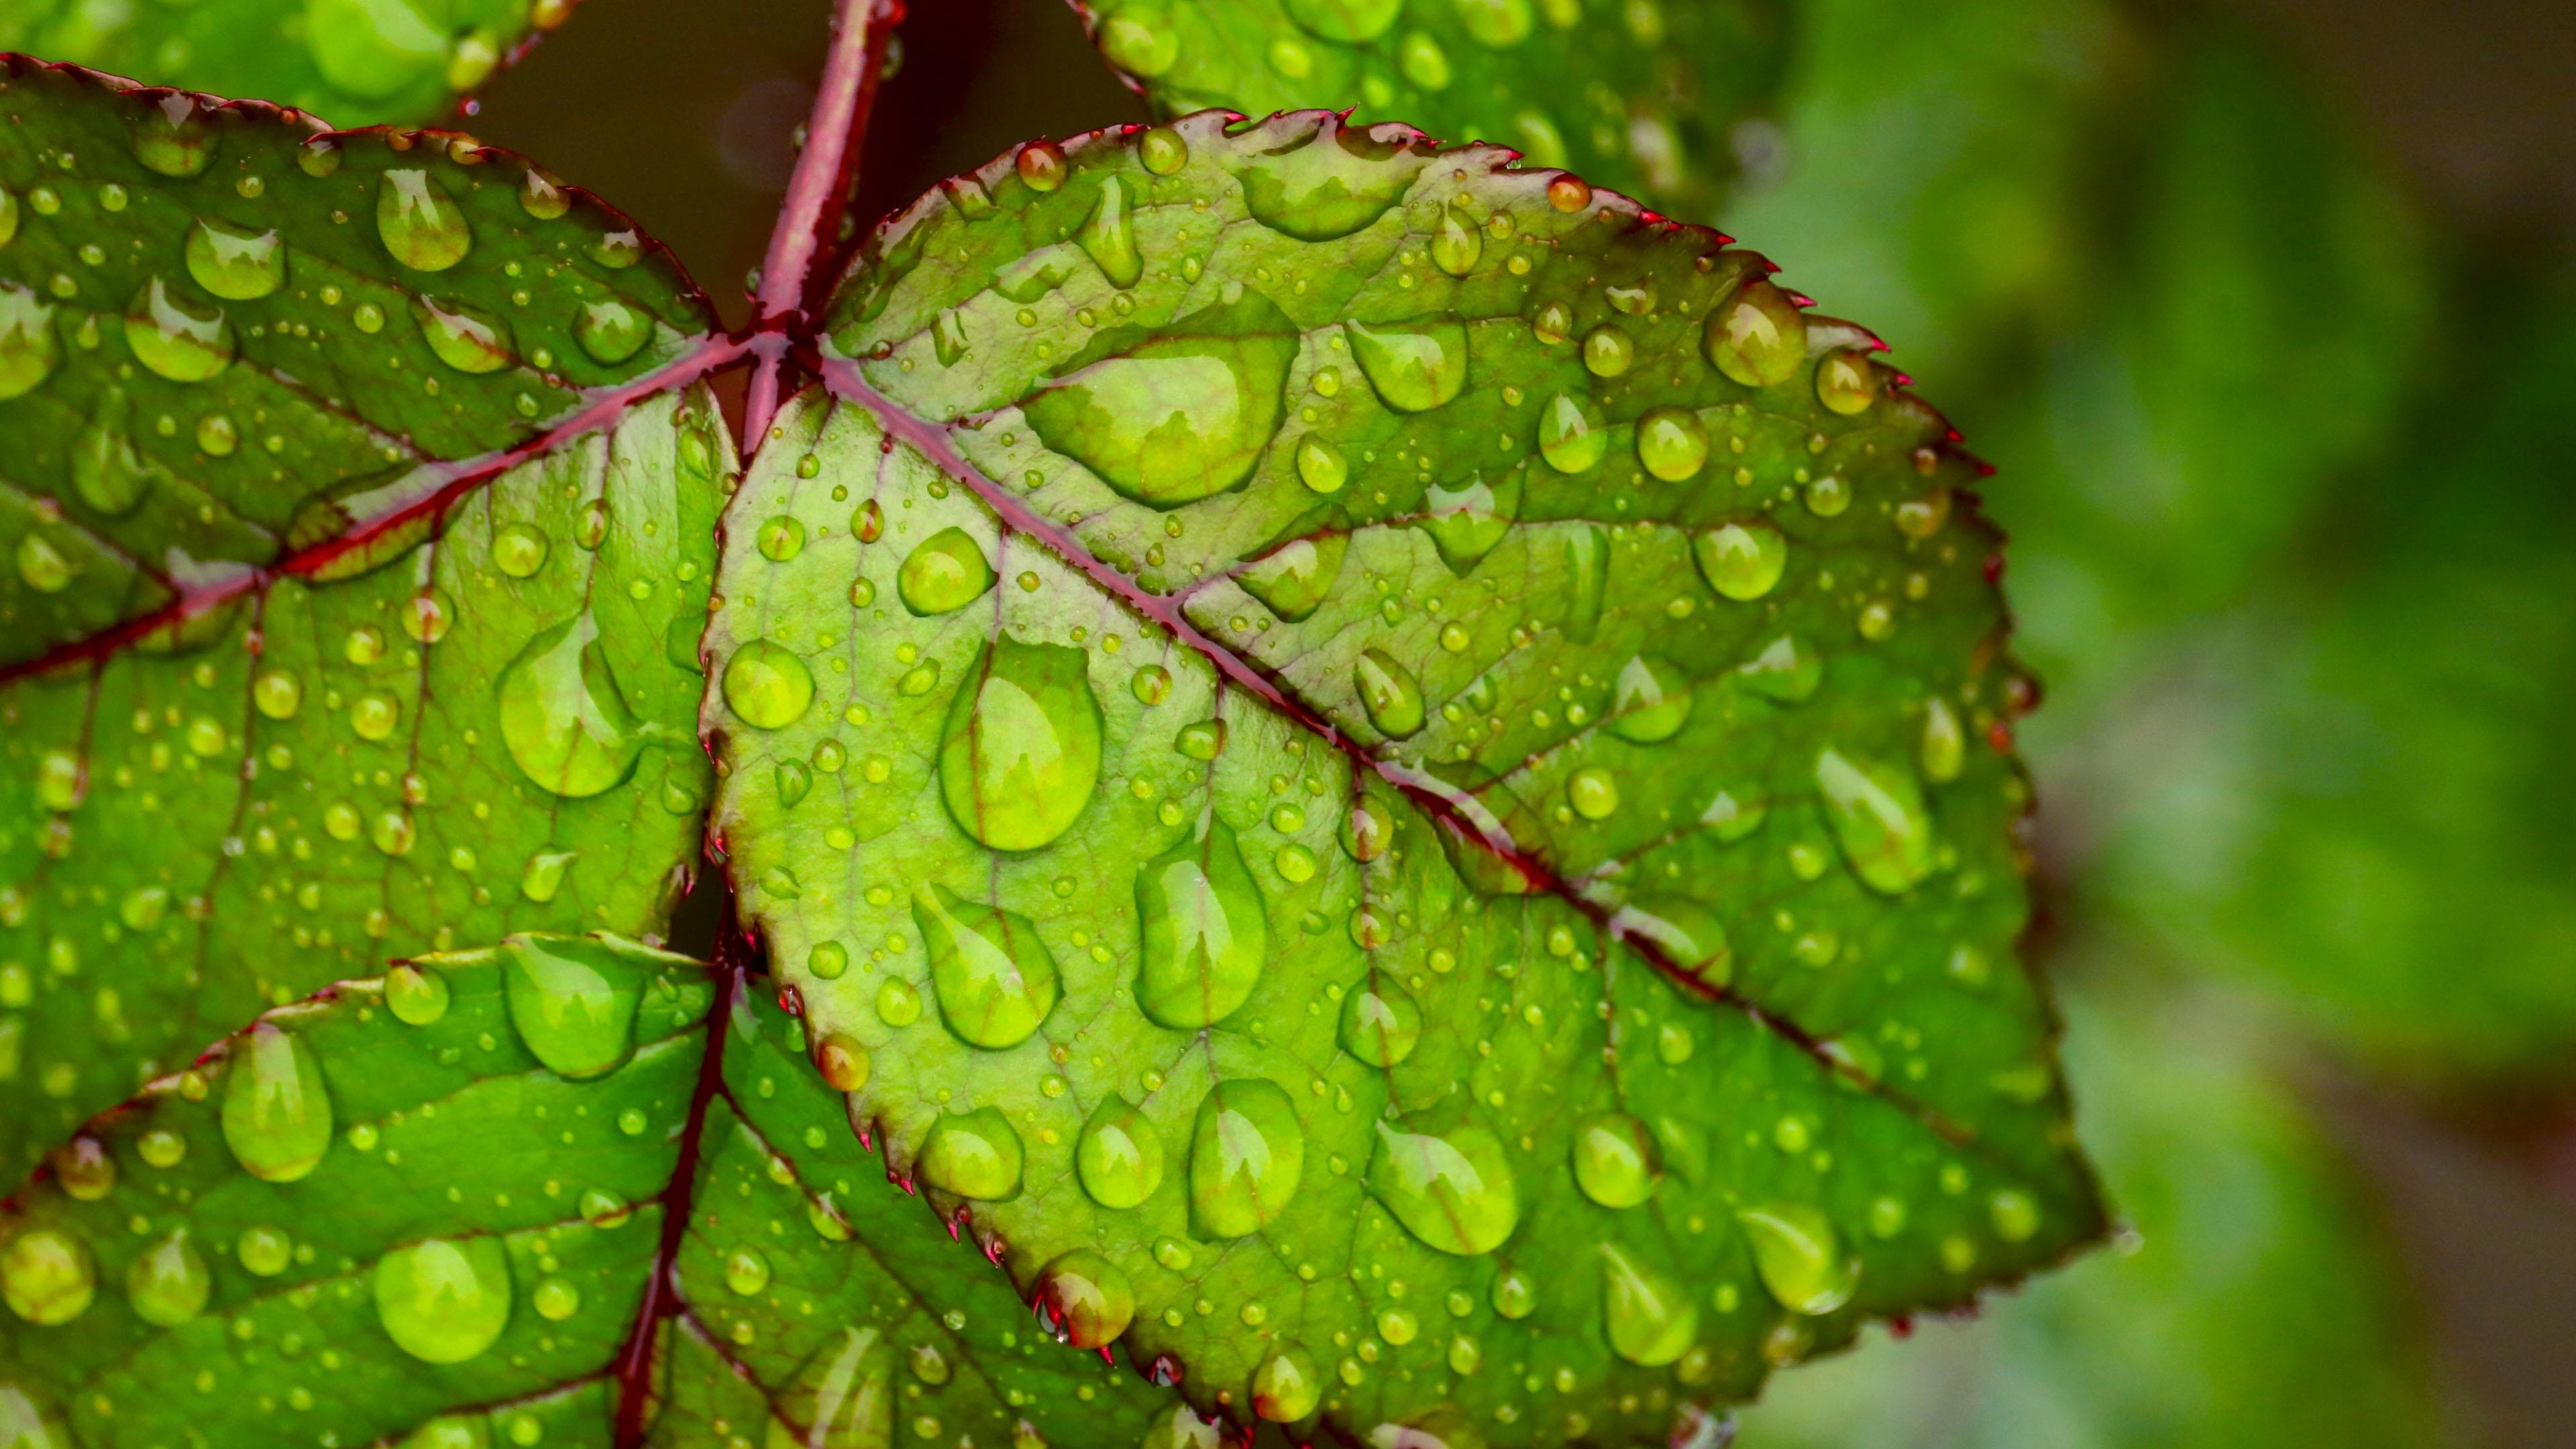 Water droplets on green leaf 4K Ultra HD Wallpaper